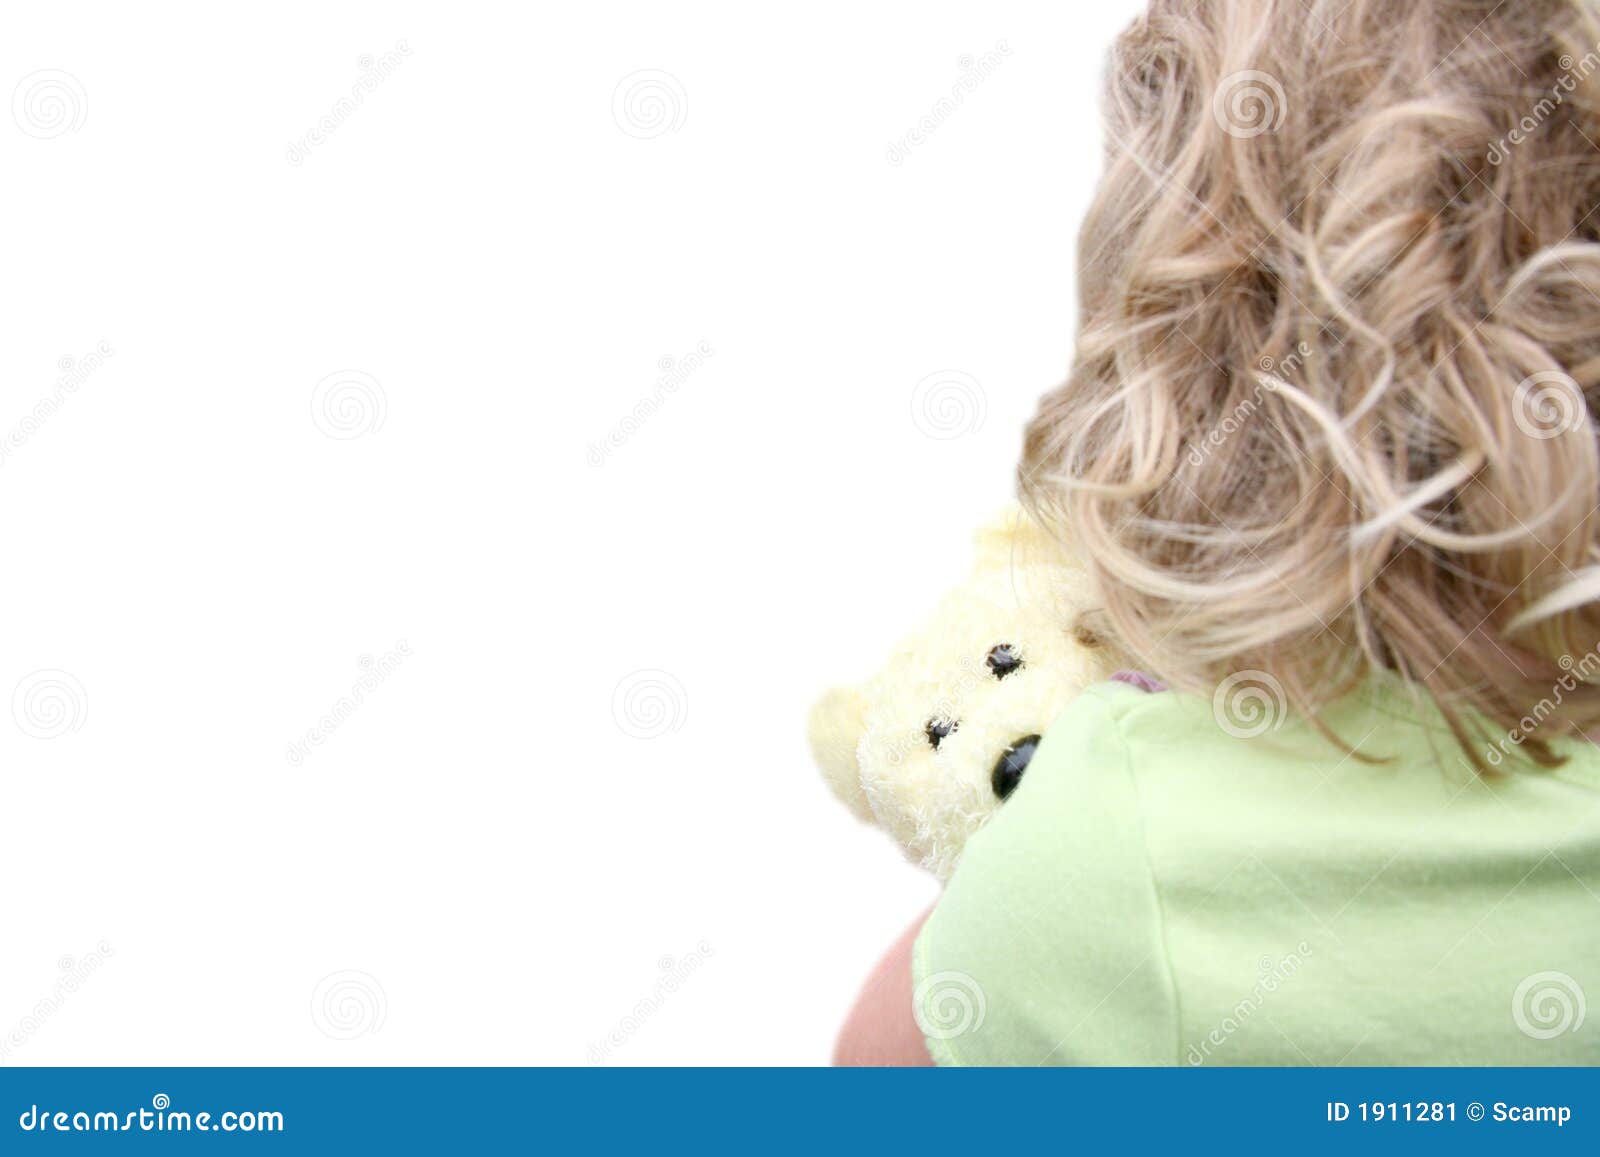 back of little girl holding teddy bear